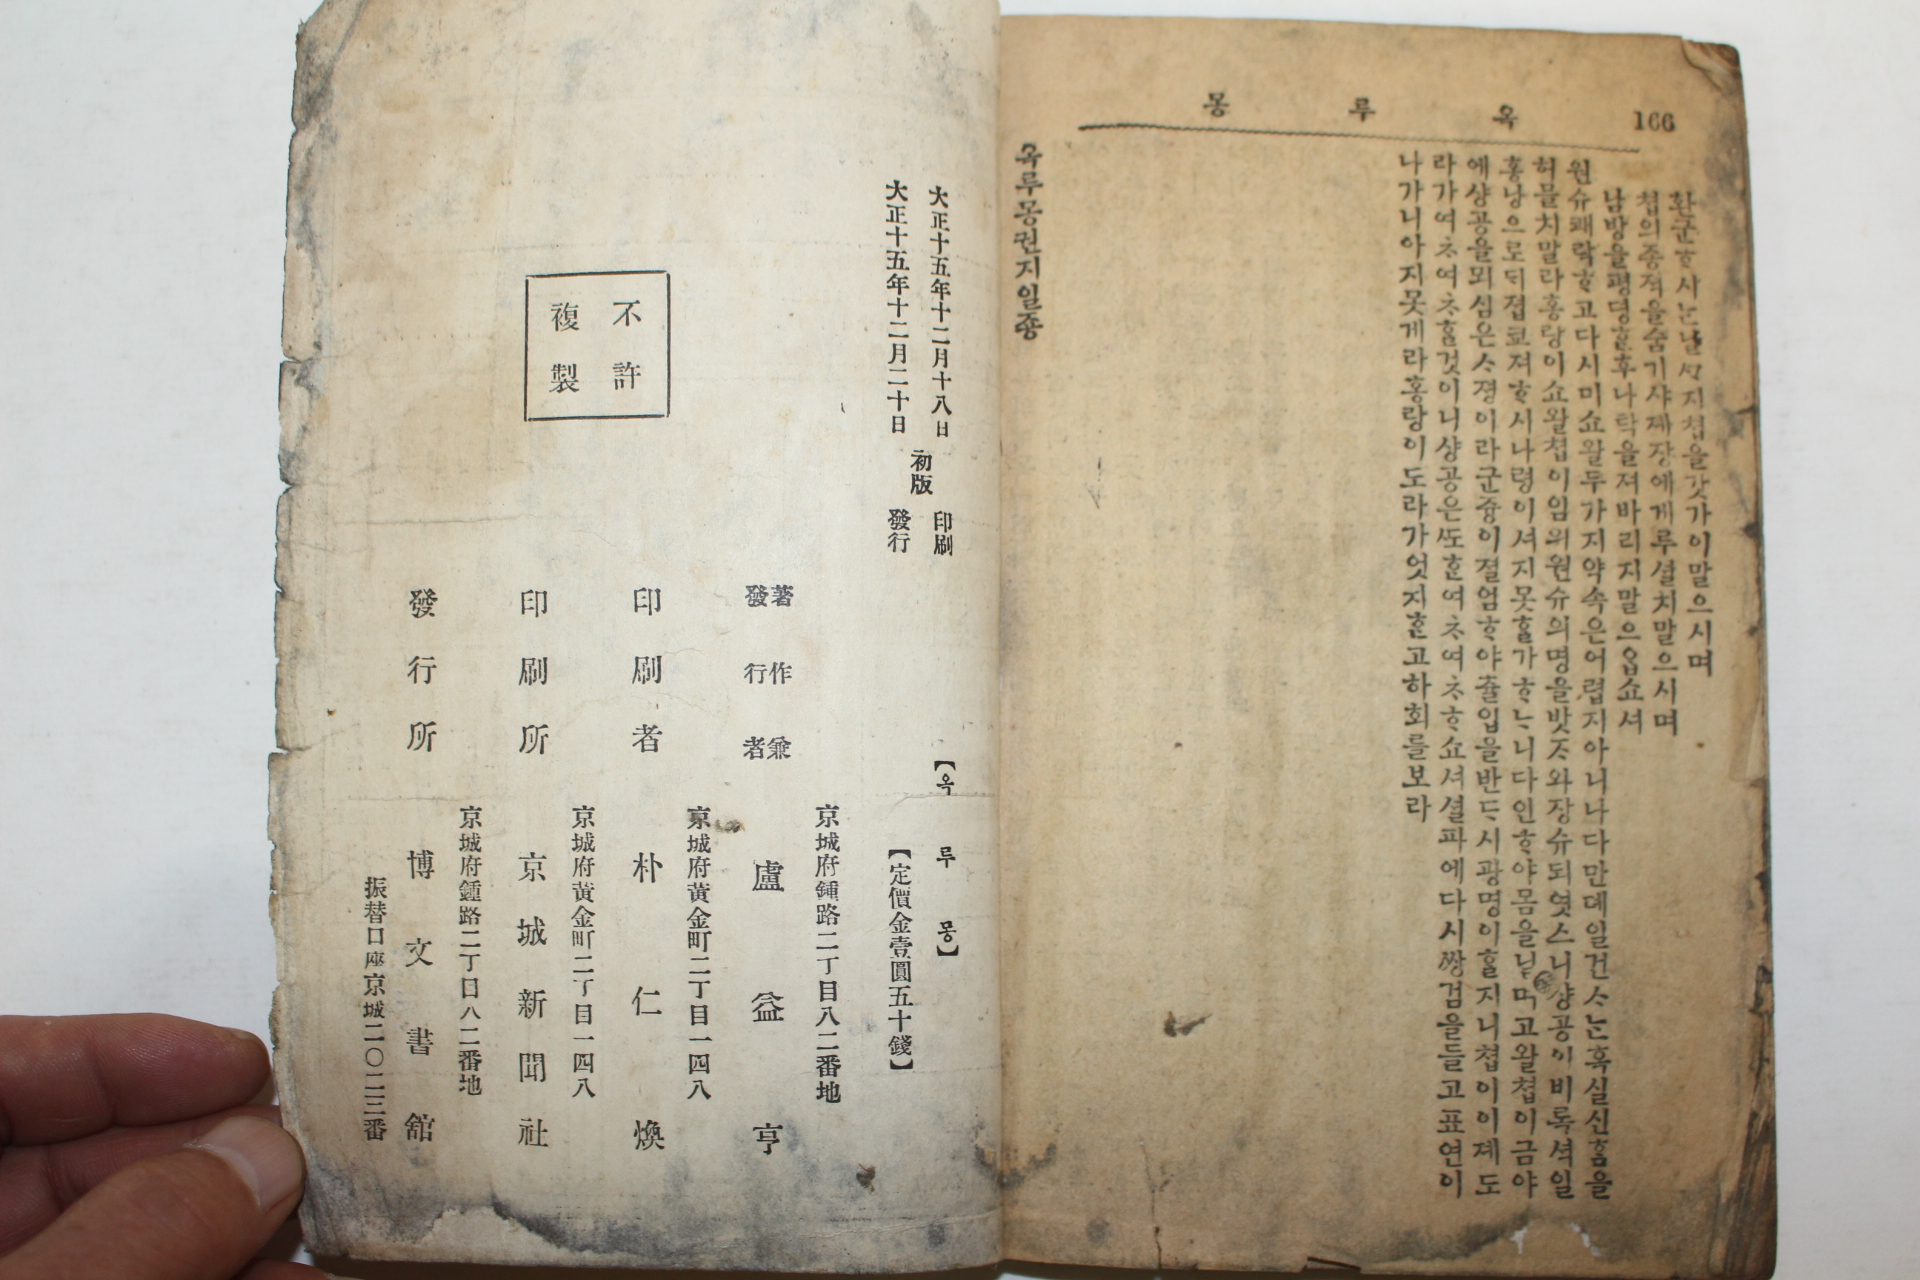 1926년 박문서관 원본한문언토 옥루몽(玉樓夢) 1권